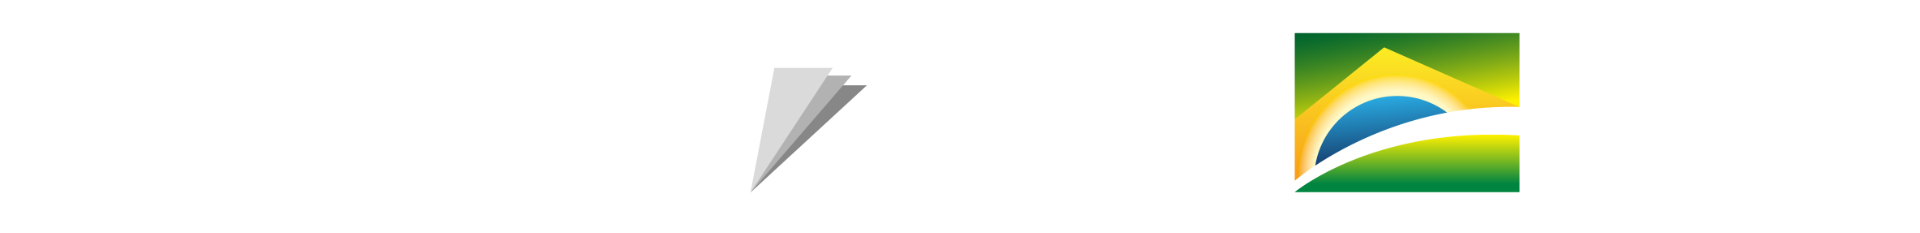 PPI + Ministério da Economia + Governo Federal (P&B)